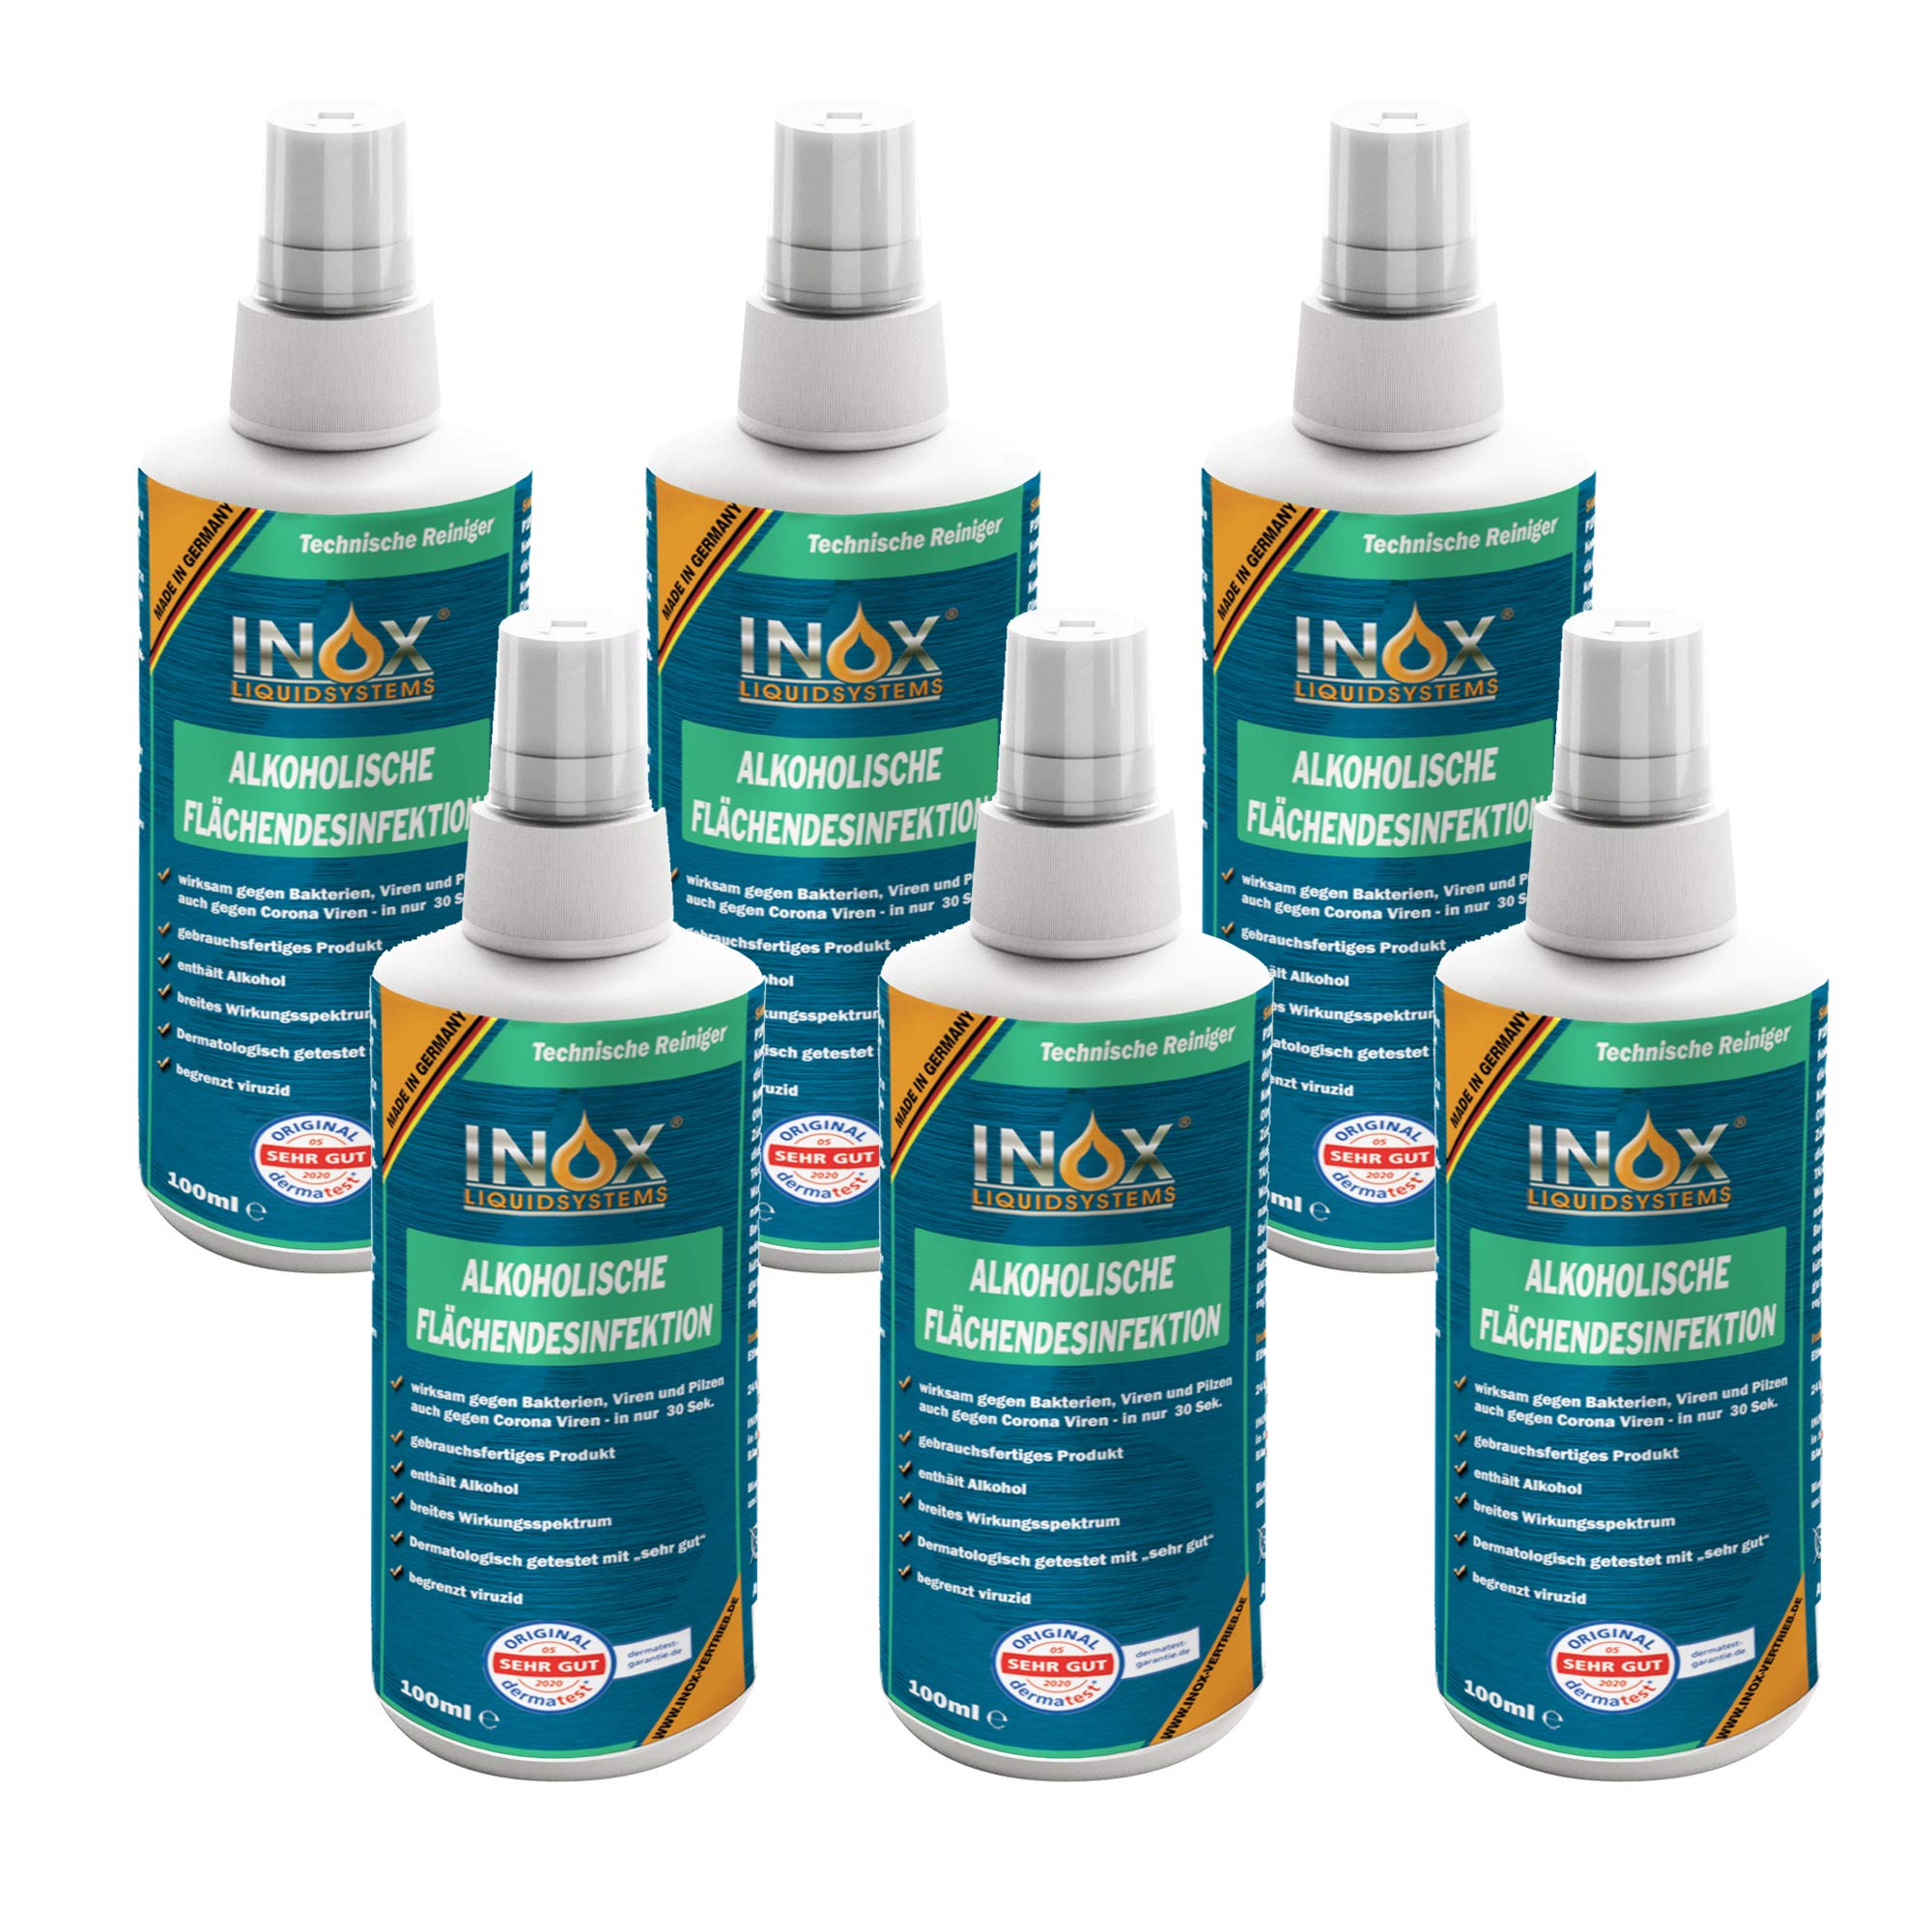 INOX® alkoholisches Flächendesinfektionsmittel 6 x 100ml - Hochwirksame Flächendesinfektion mit Alkohol - Ideales Desinfektionsmittel für alle glatten Oberflächen